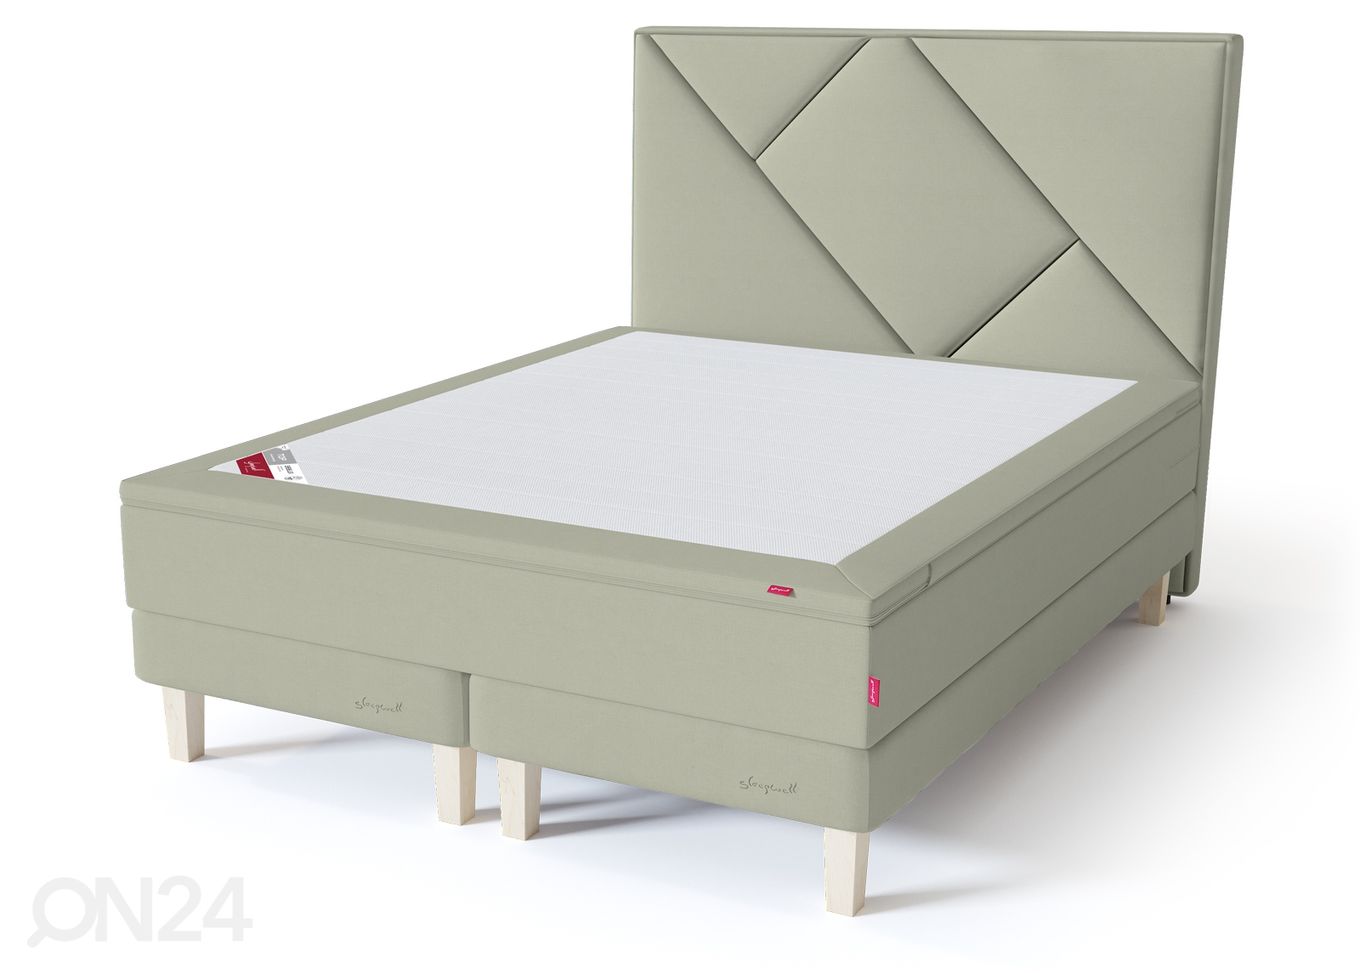 Sleepwell Red континентальная кровать на раме 180x200 cm мягкая увеличить